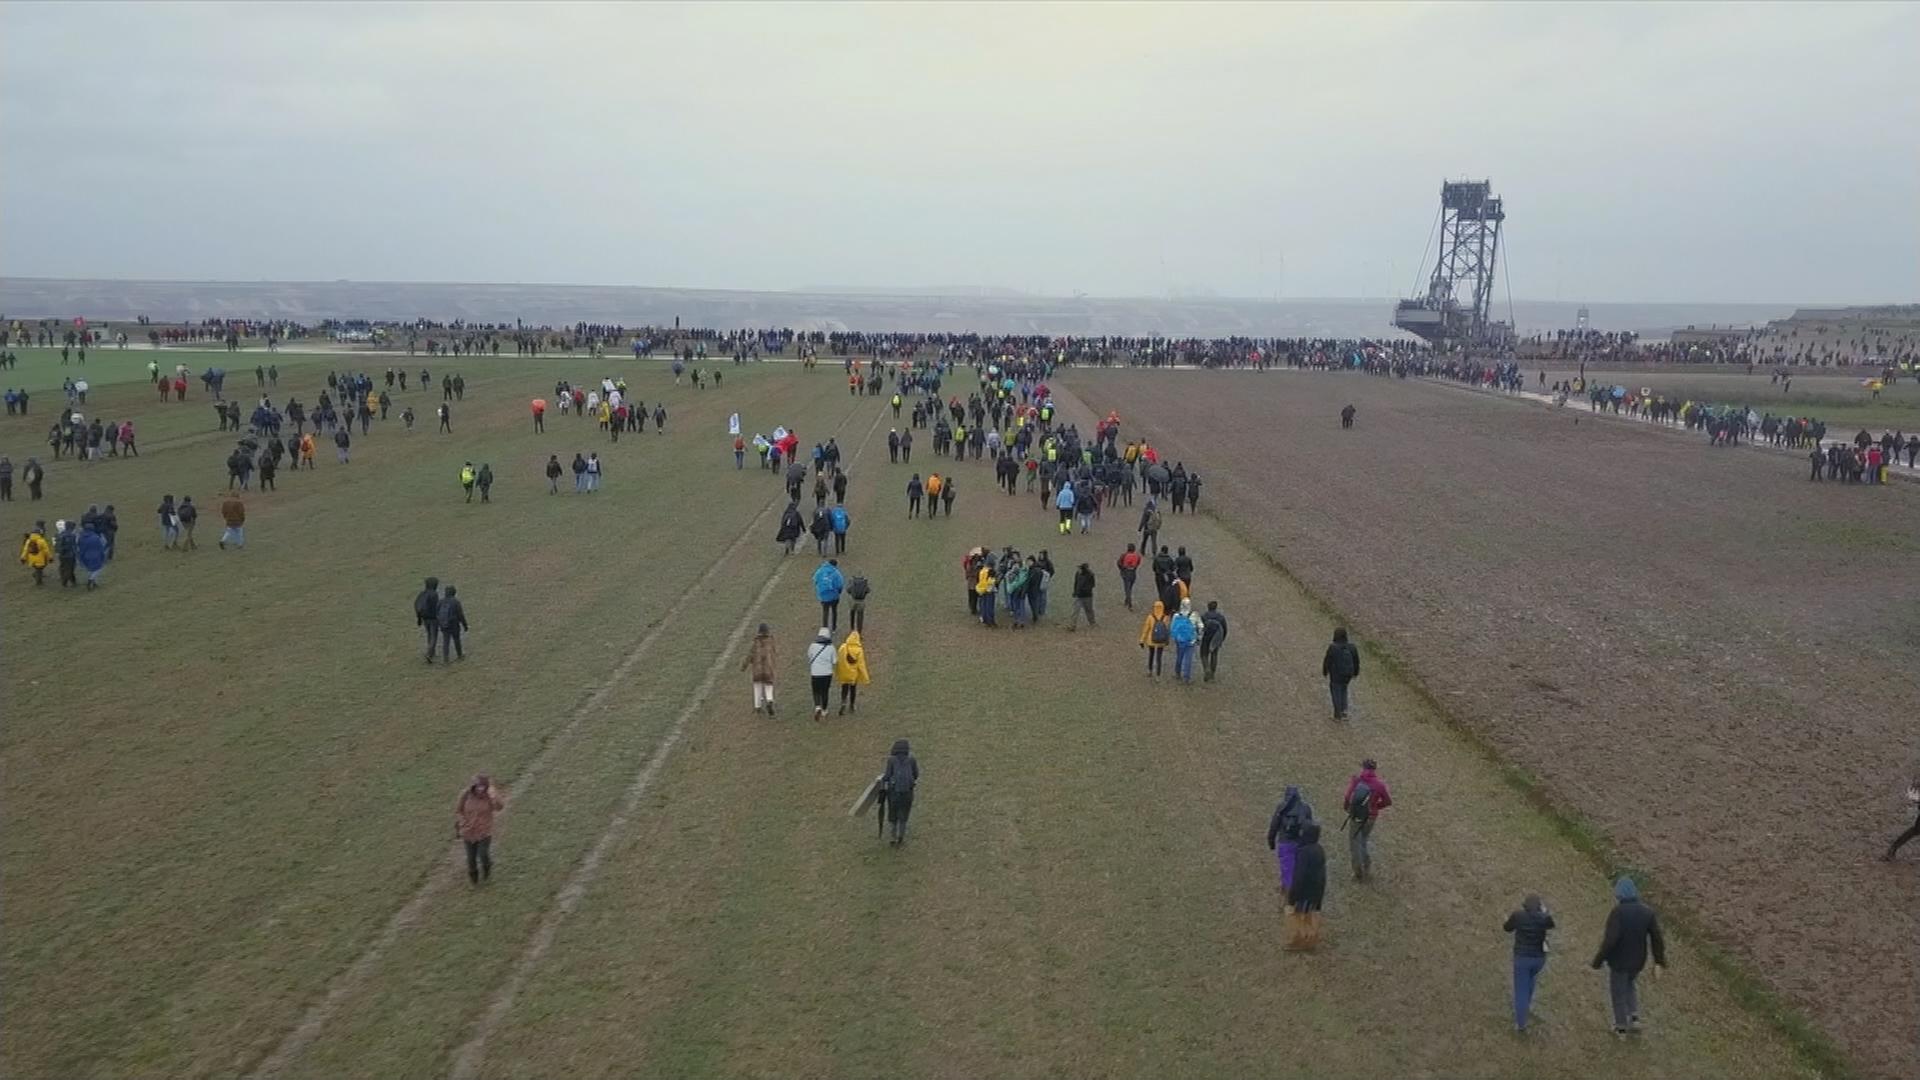 Auf dem Bild sind Klimaaktivisten und Aktivistinnen zu sehen, welche auf die Kante eines Braunkohleabbaugebietes zulaufen um sich dort zu versammeln.